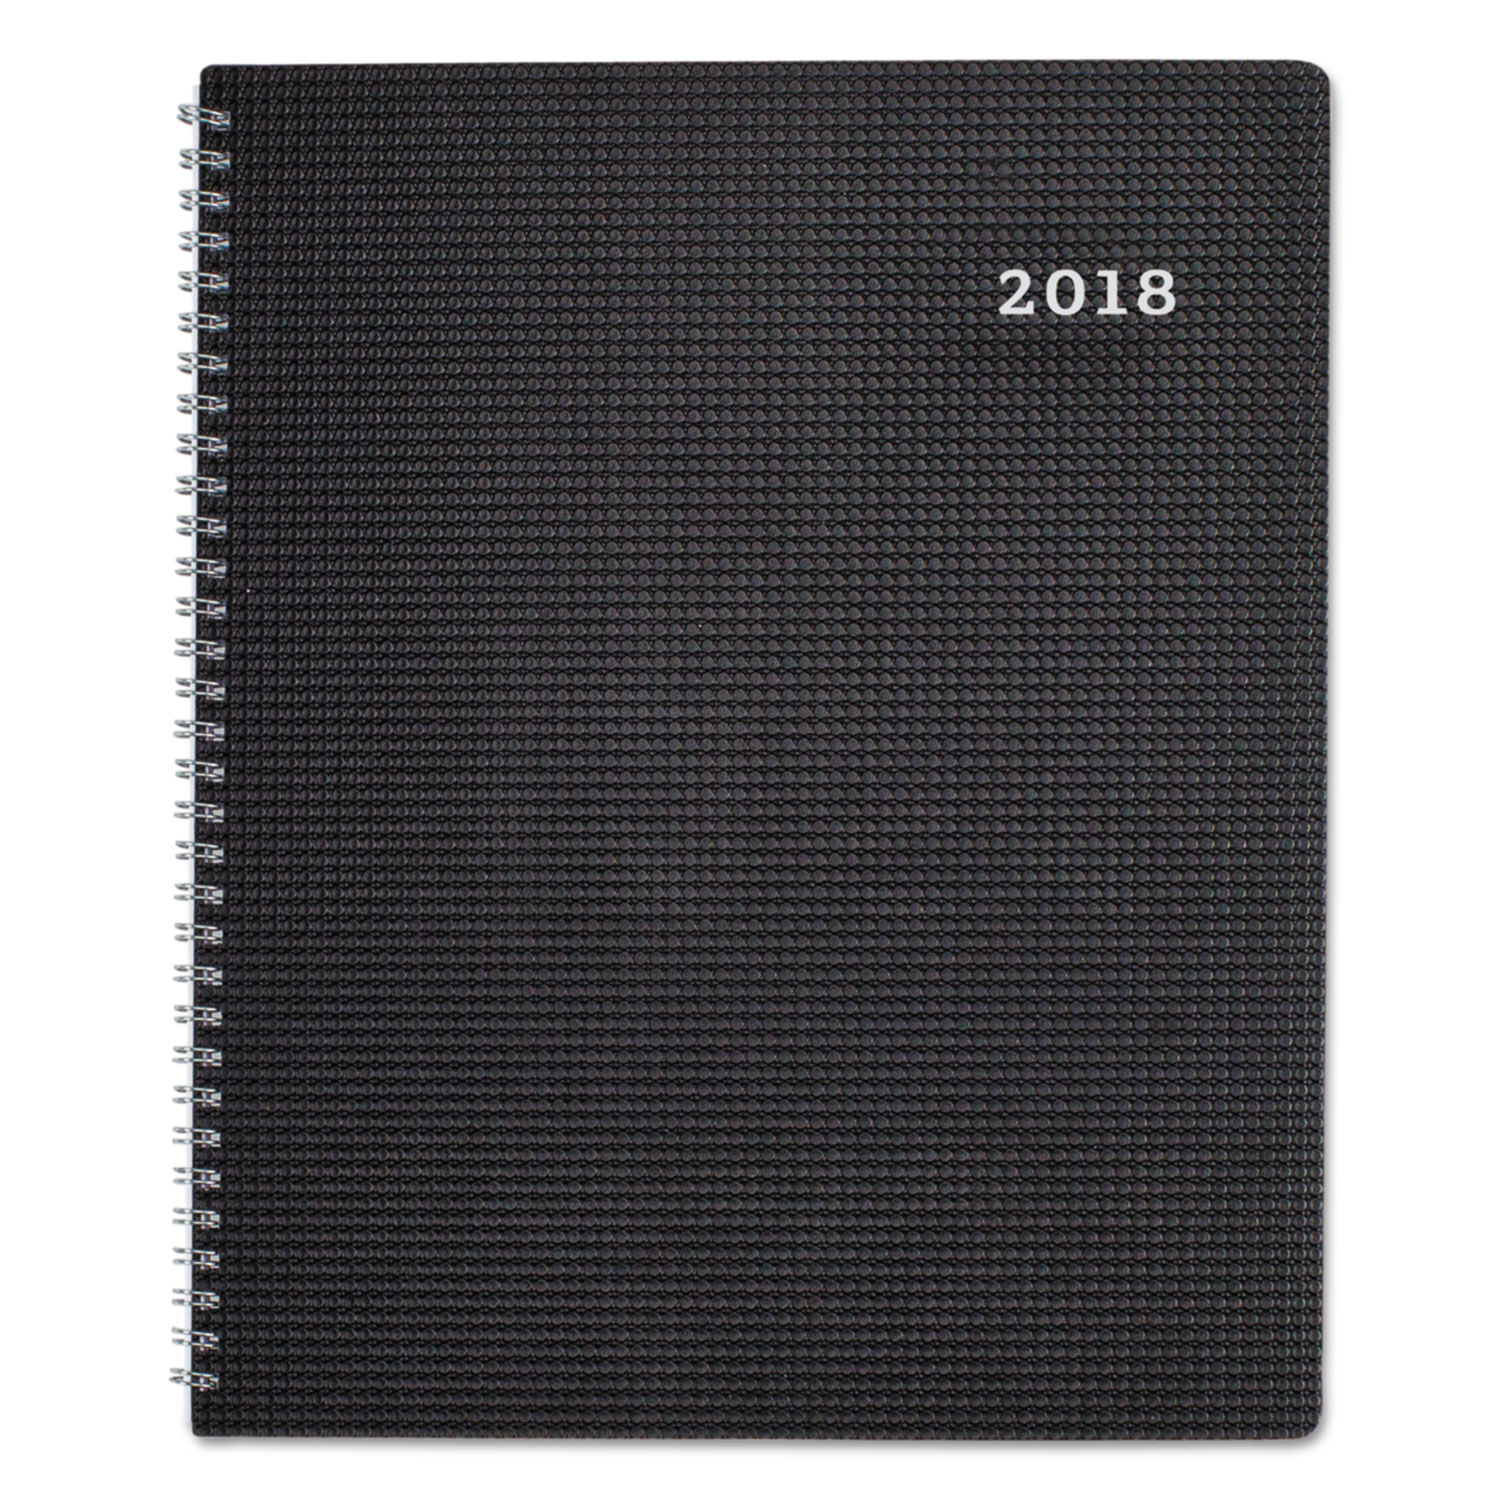 DuraFlex Weekly Planner, 8 1/2 x 11, Black, 2018